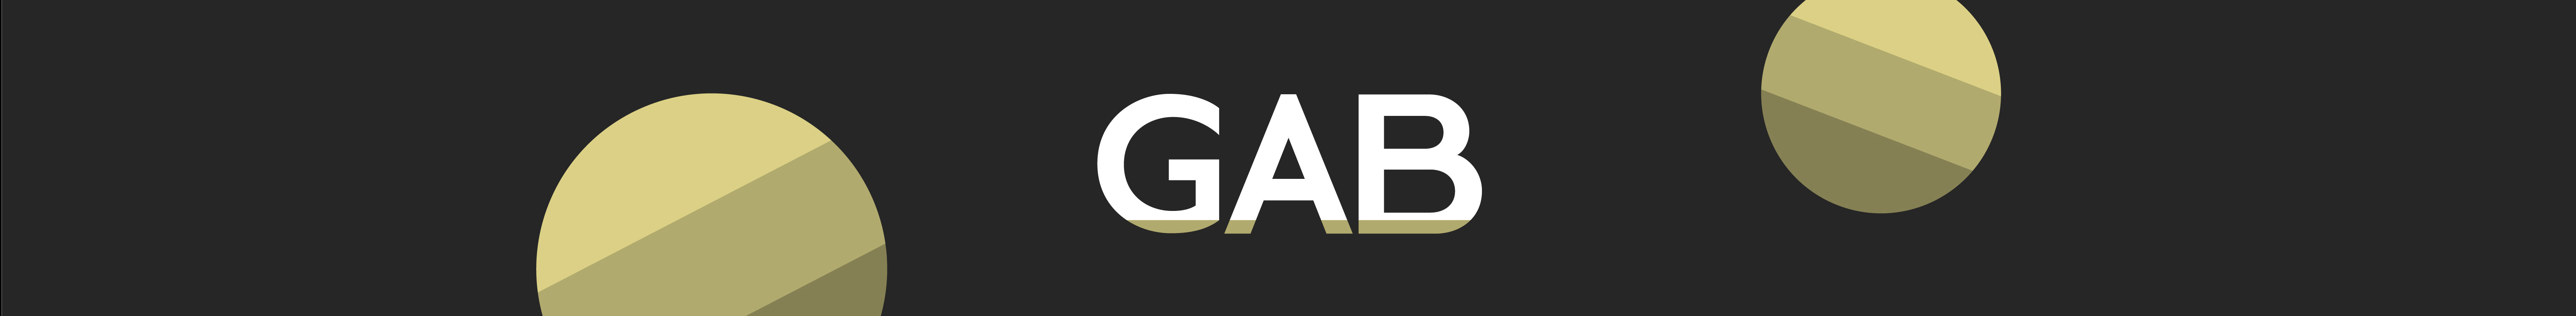 Gab Gallego profil başlığı